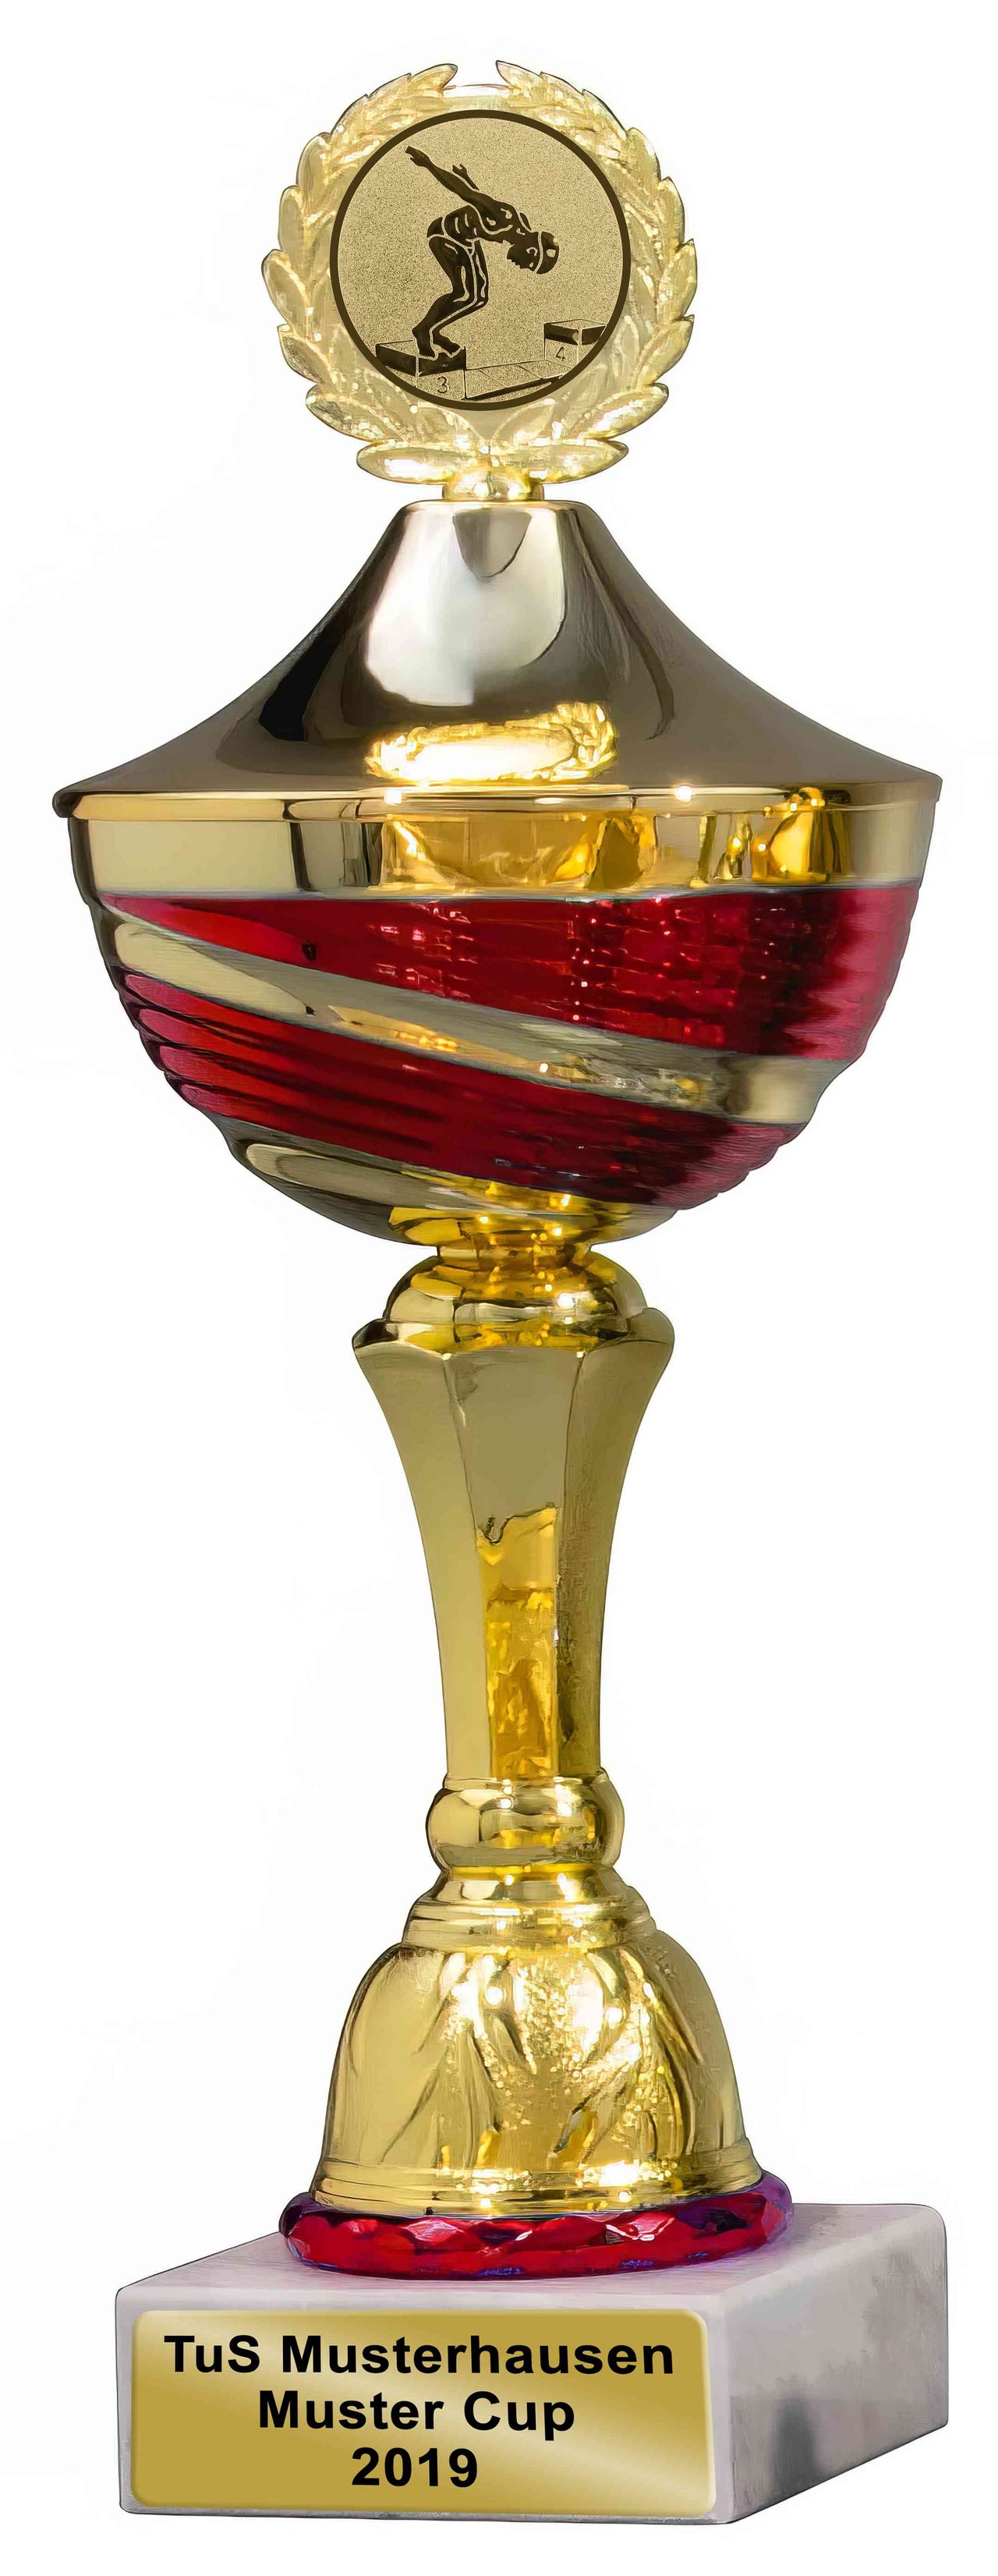 Goldener und silberner Pokal, Pokale Heidelberg, 3er Pokalserie 267 mm – 297 mm, PK756260-3-E50 mit roten Akzenten und einem Eiskunstlauf-Emblem oben, gravierter „tus Musterhausen 2019 Mustercup“.